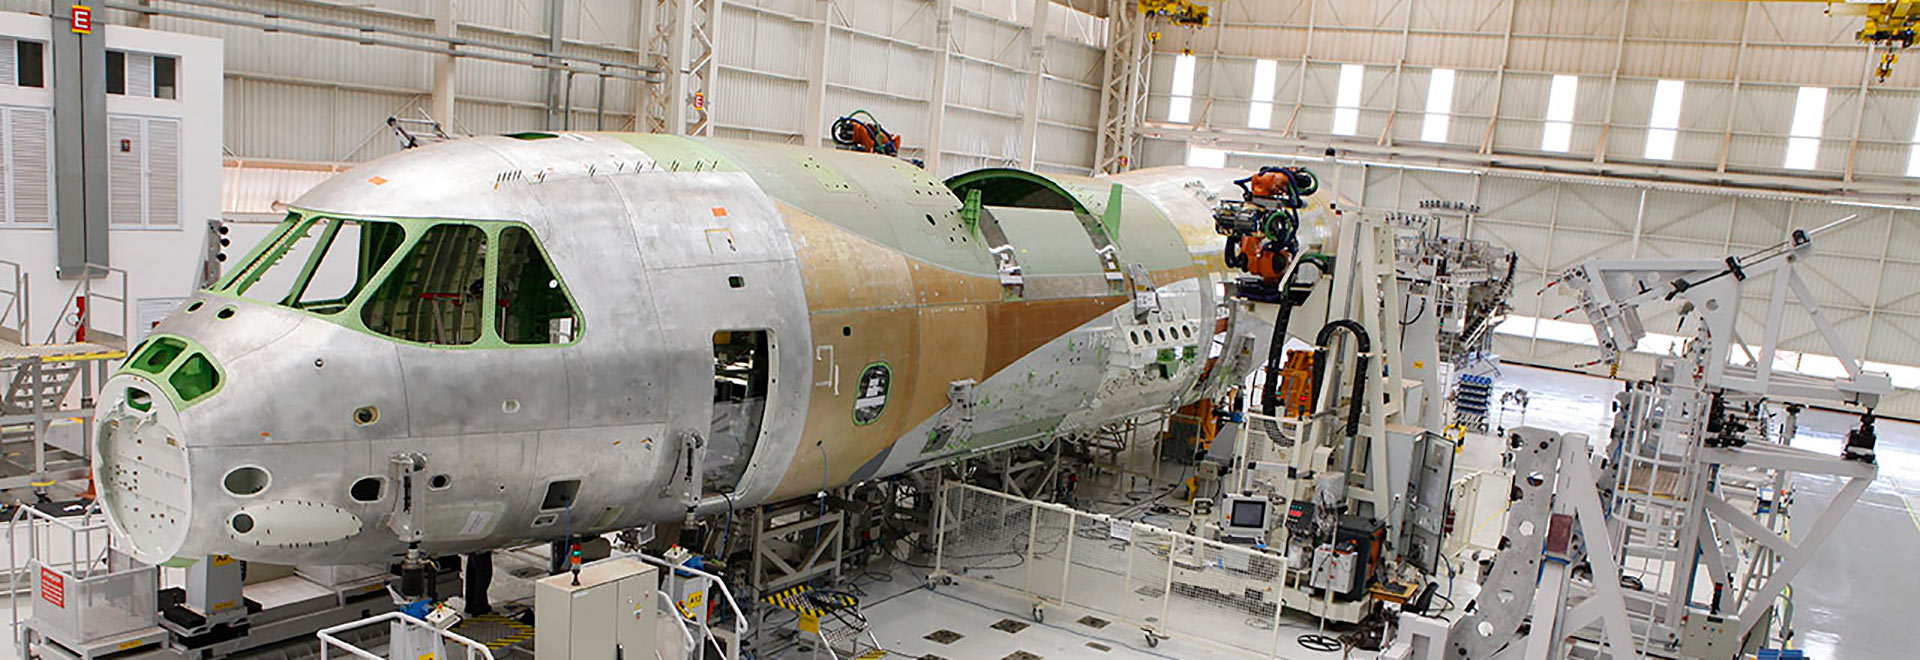 Linha de montagem da fábrica da Embraer. Programa Mobilidade Aérea do Futuro será realizado em parceria com o ITA e a Embraer